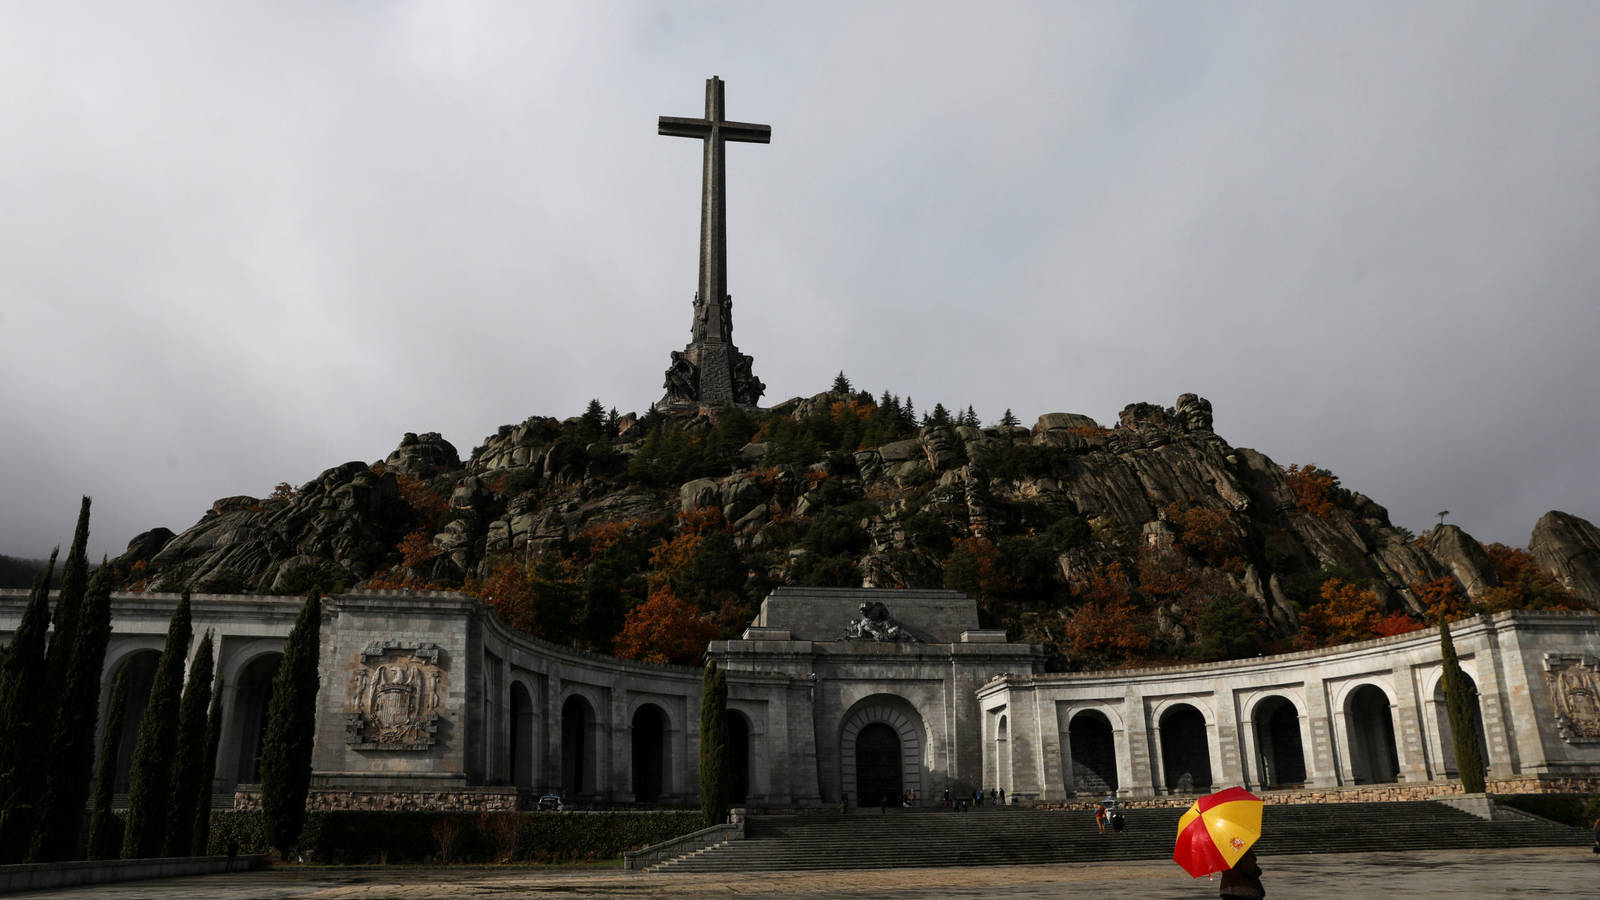 El jueves 24 de octubre será la exhumación de los restos del dictador Francisco Franco